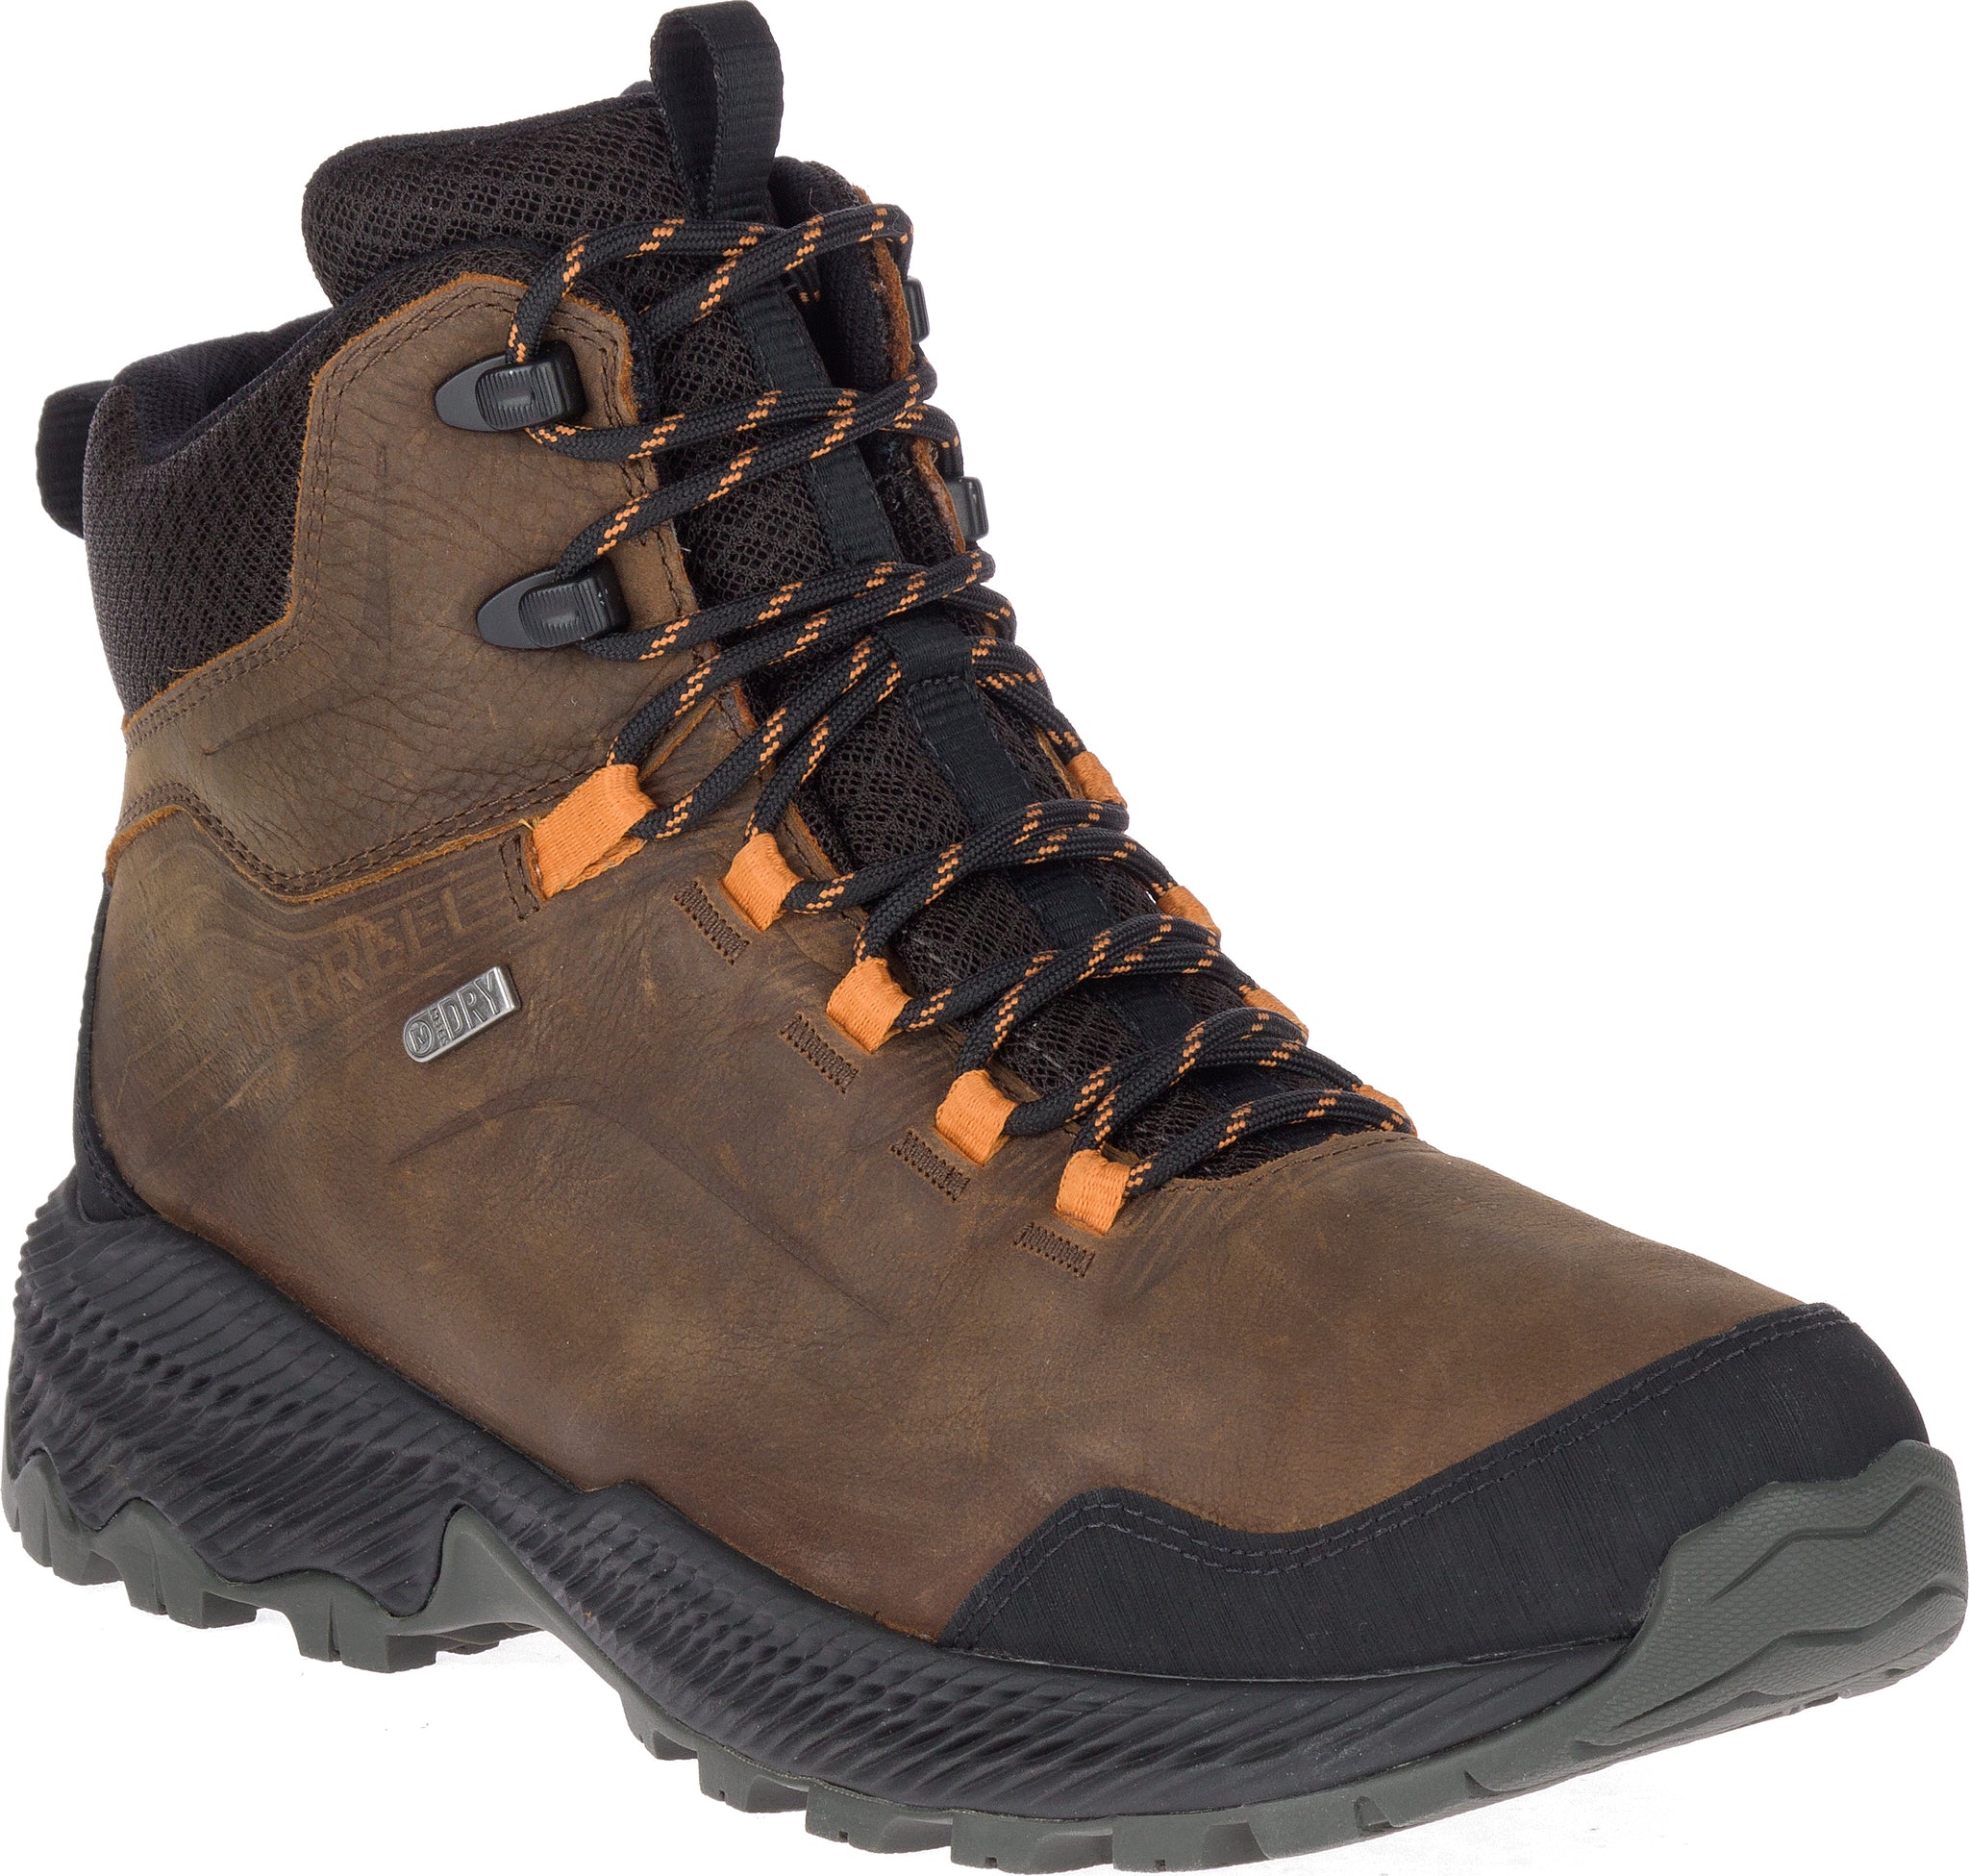 merrell hiking boots men's waterproof